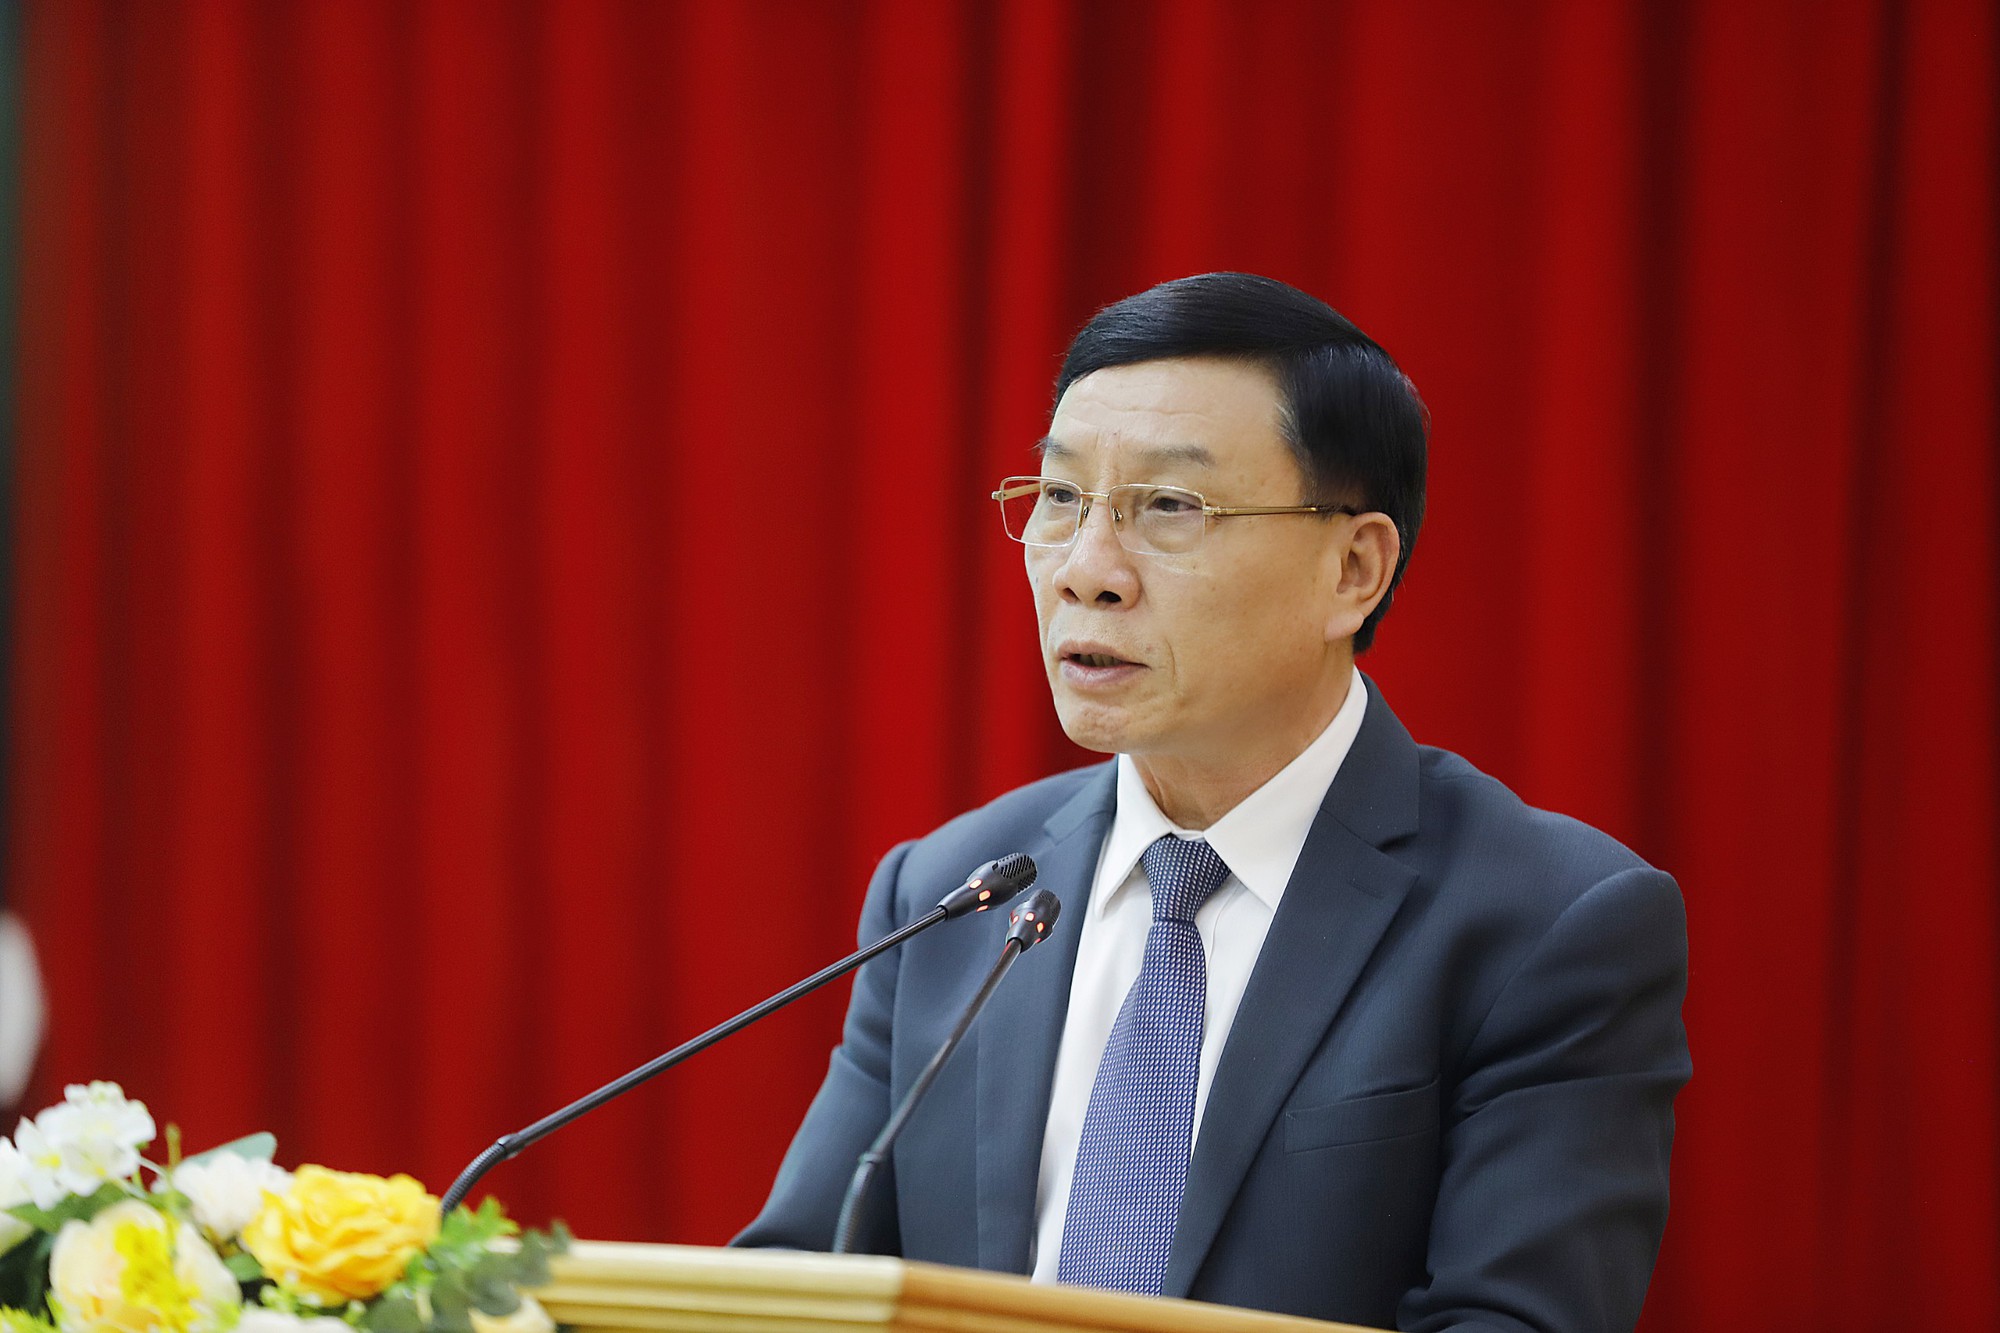 Phó Chủ tịch BCH TƯ Hội NDVN Bùi Thị Thơm: Nhiều chỉ tiêu nhiệm kỳ 2018 - 2023 đều đạt và vượt khá cao- Ảnh 2.